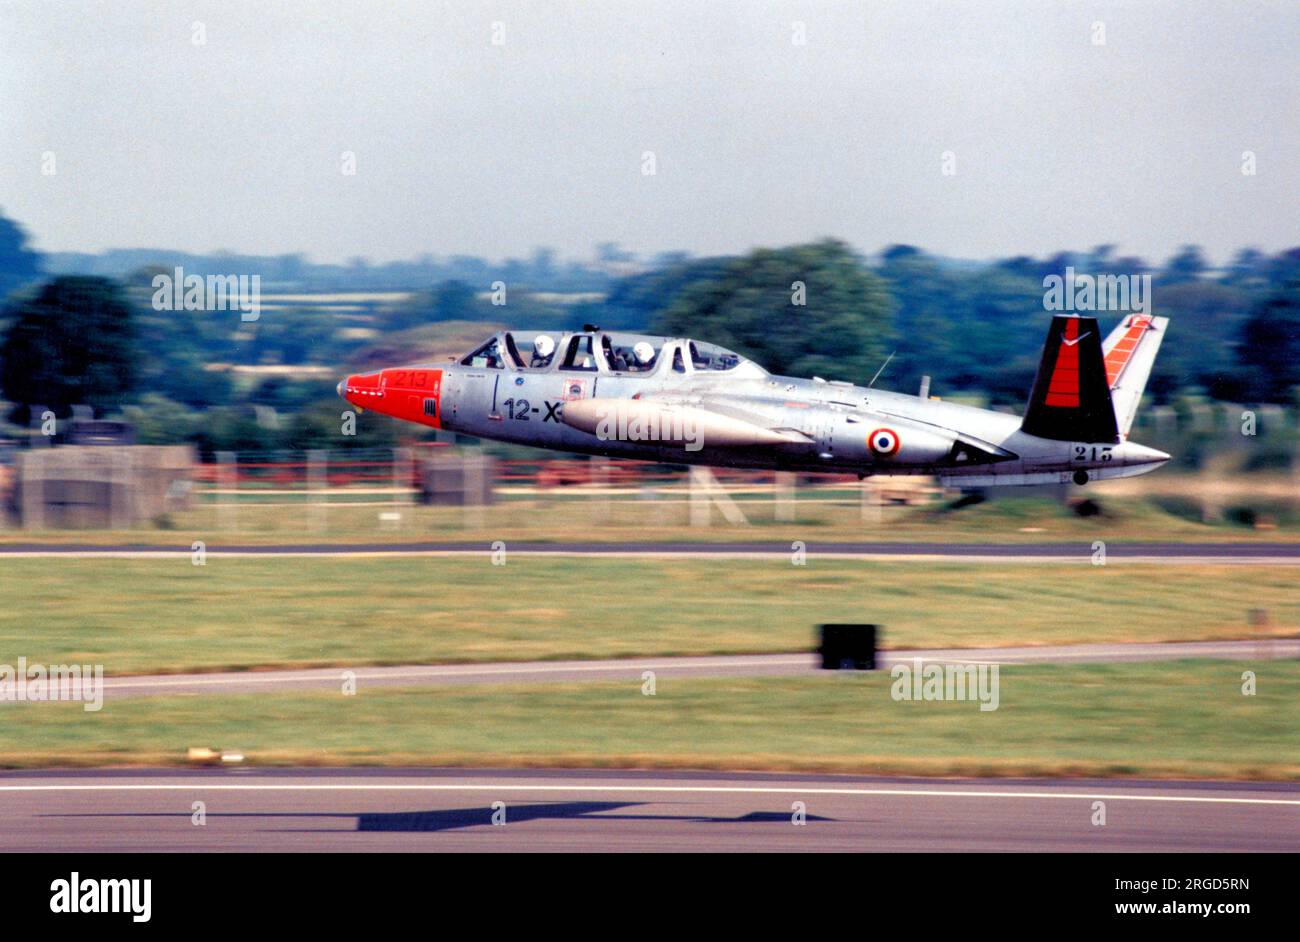 Armee de l'Air - Fouga CM.170 Magister 213 - 12-XO, at RAF Fairford in July 1991. (Armee de l'Air - French Air Force). Stock Photo